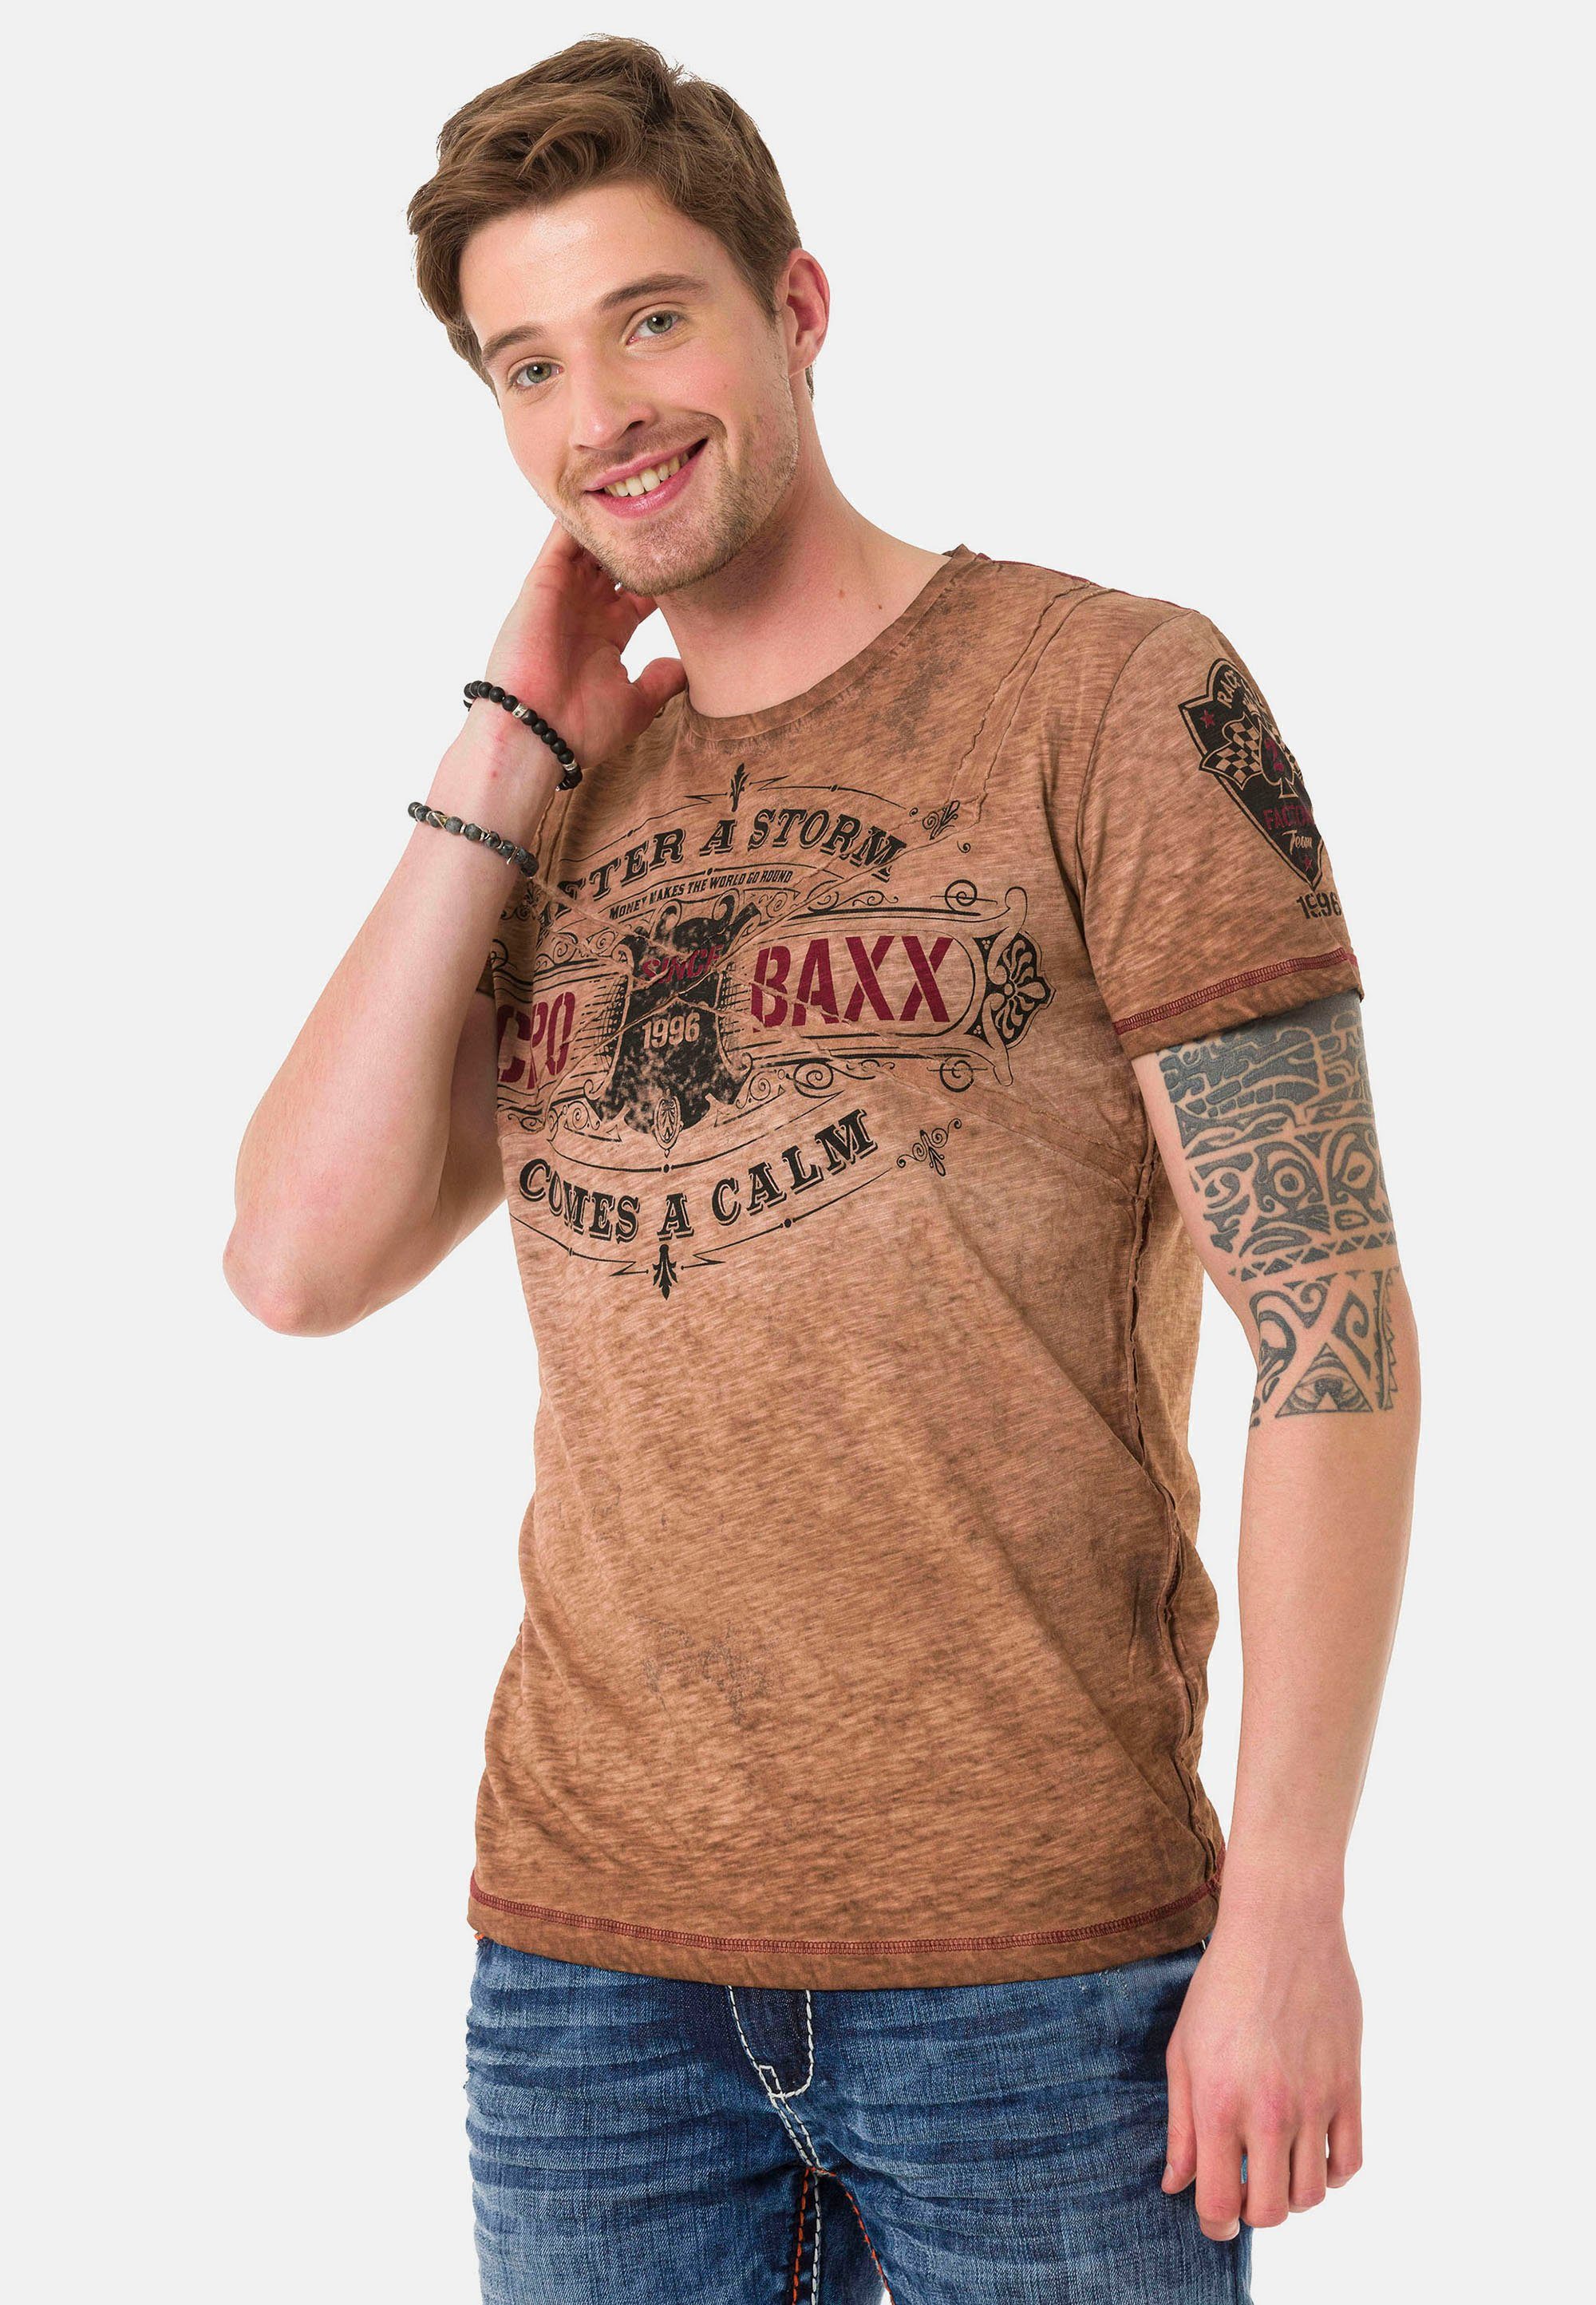 Cipo & Baxx im VintageLook T-Shirt braun